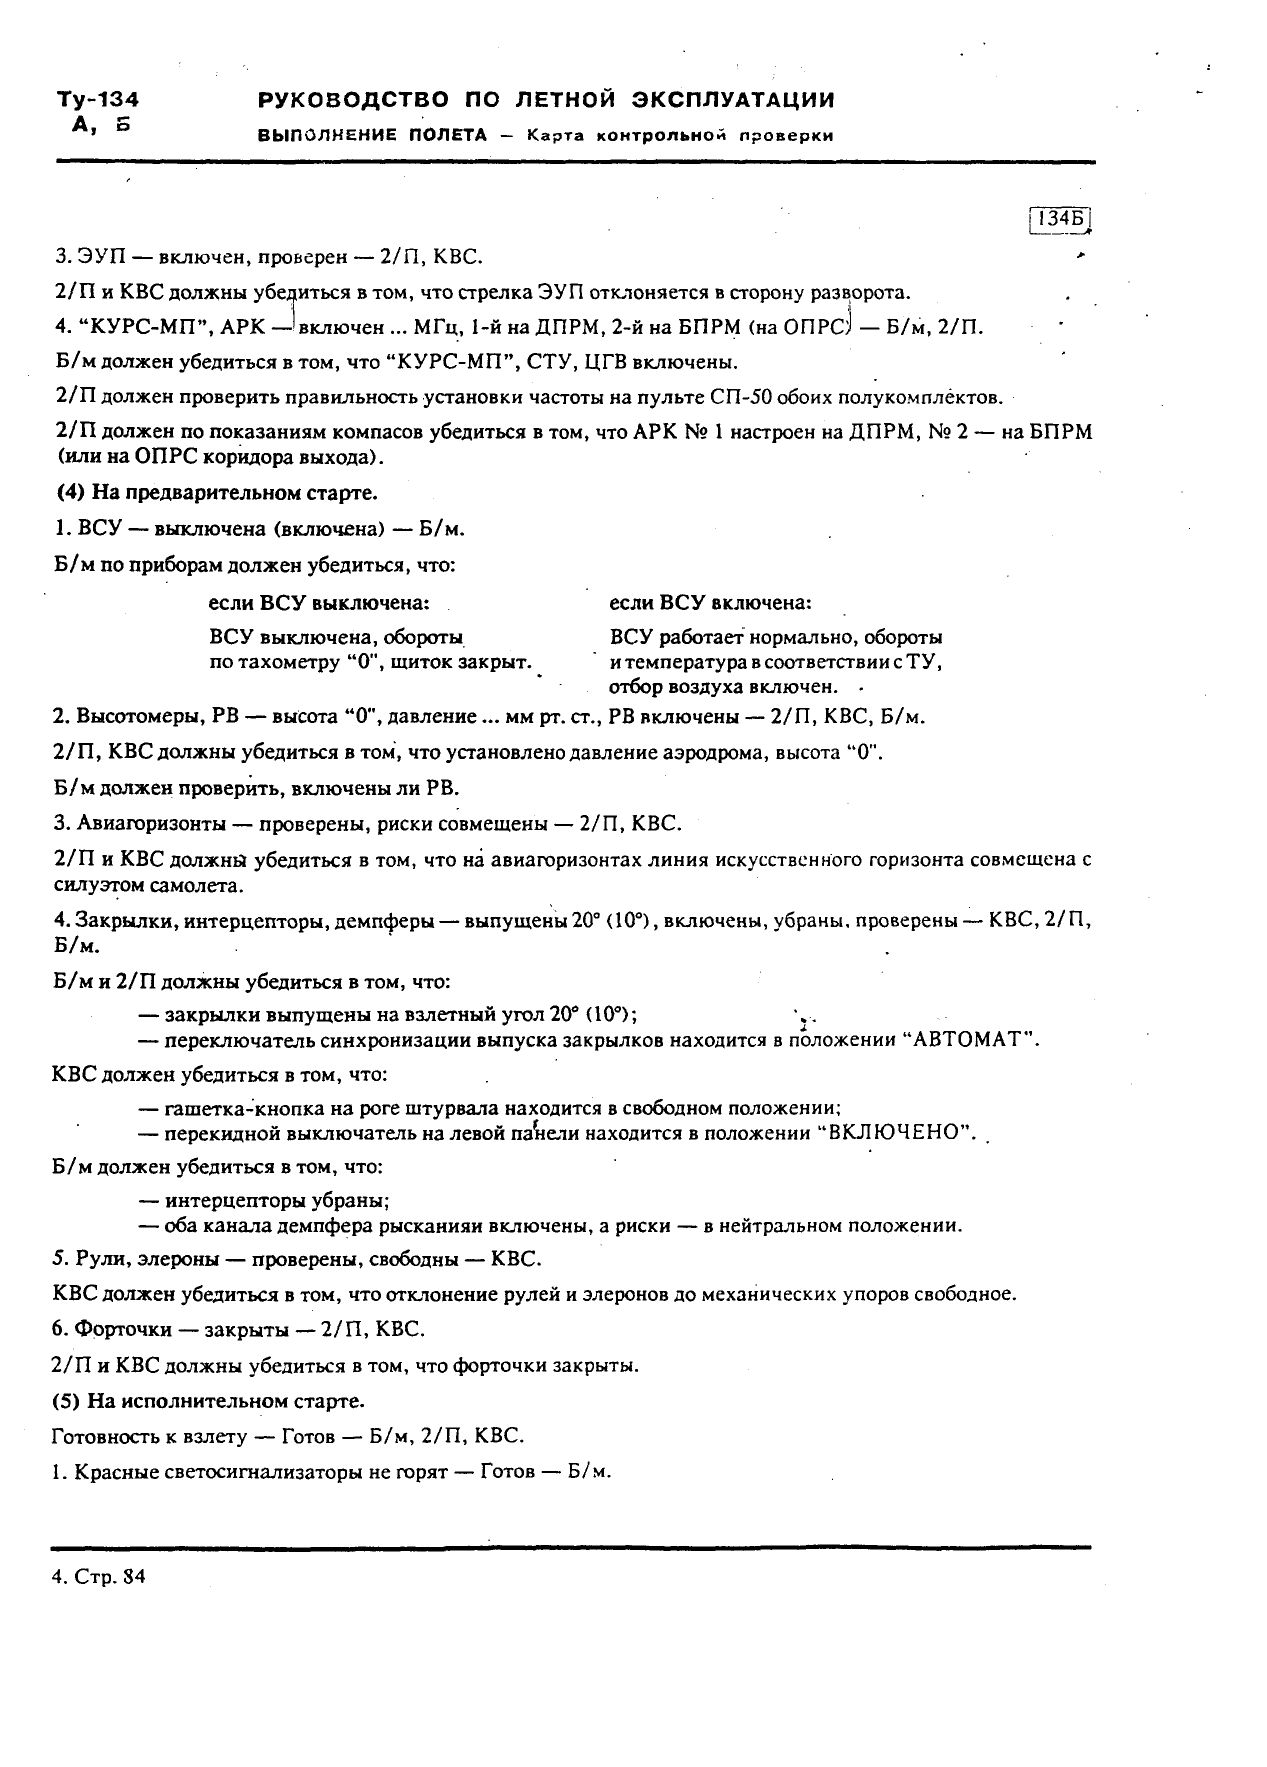 Tu-134 (A,B)_IZM_12_071